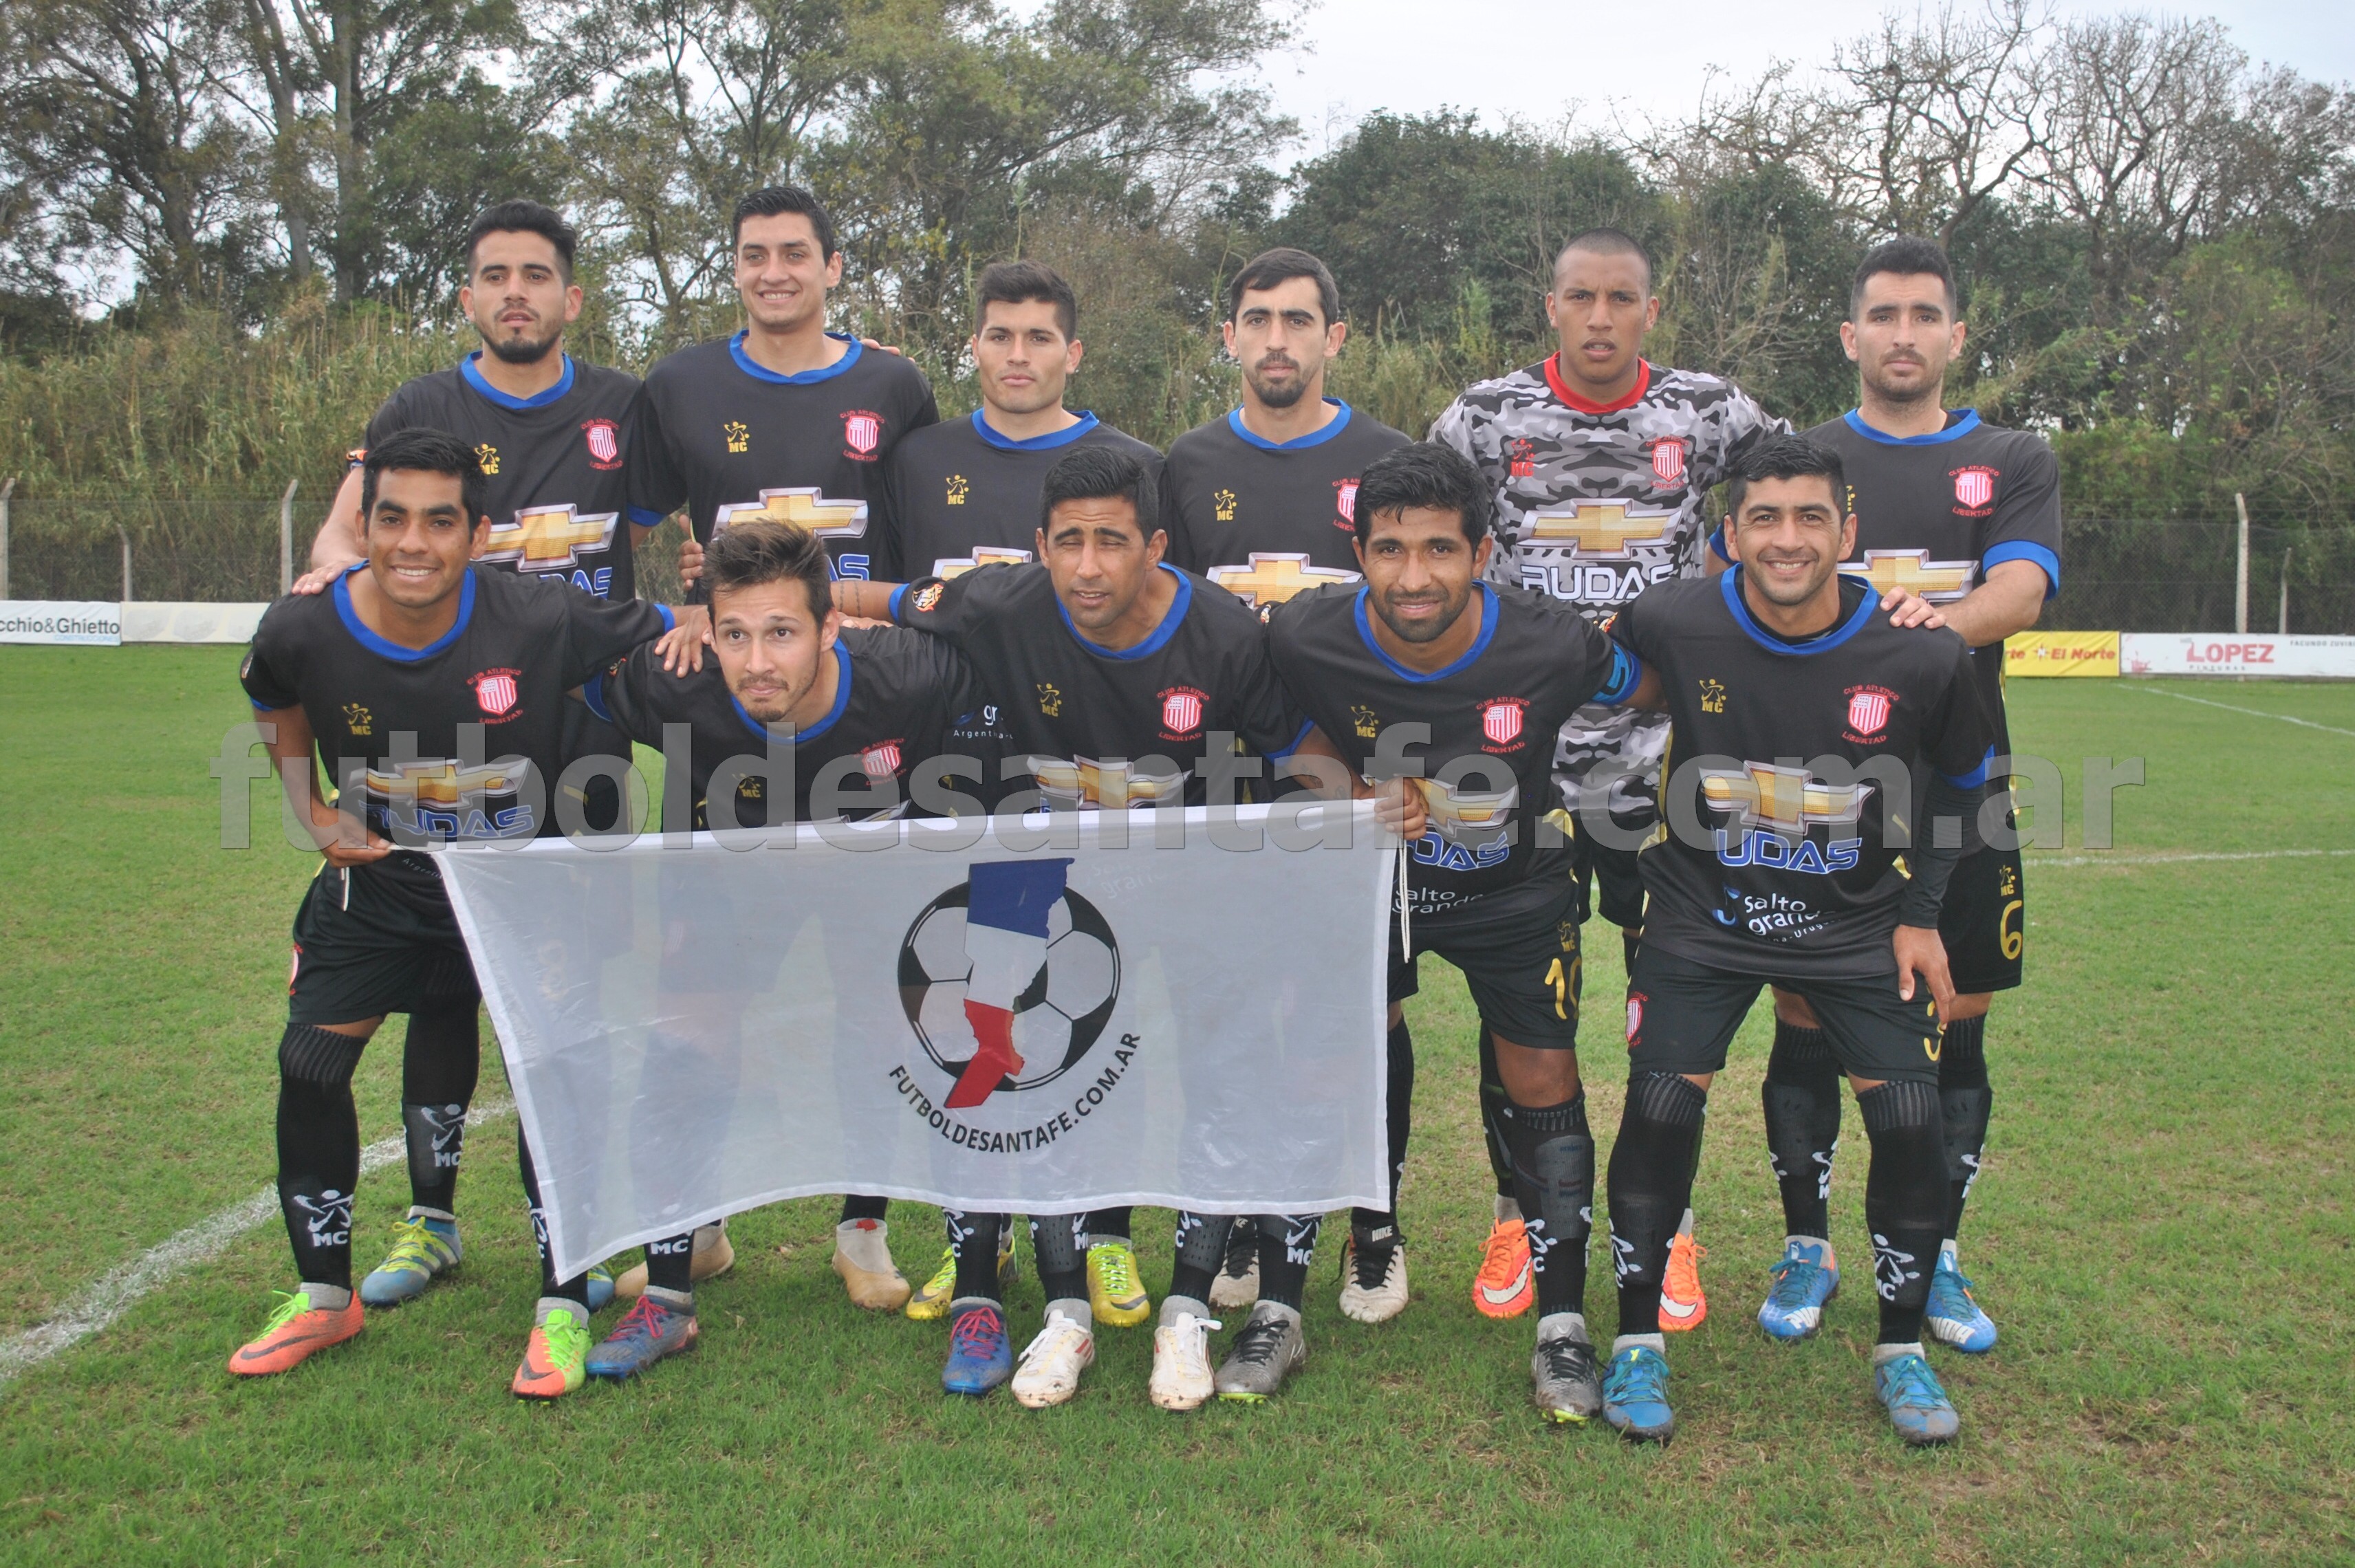 Cosmos FC 1 - Libertad (Concordia) 3